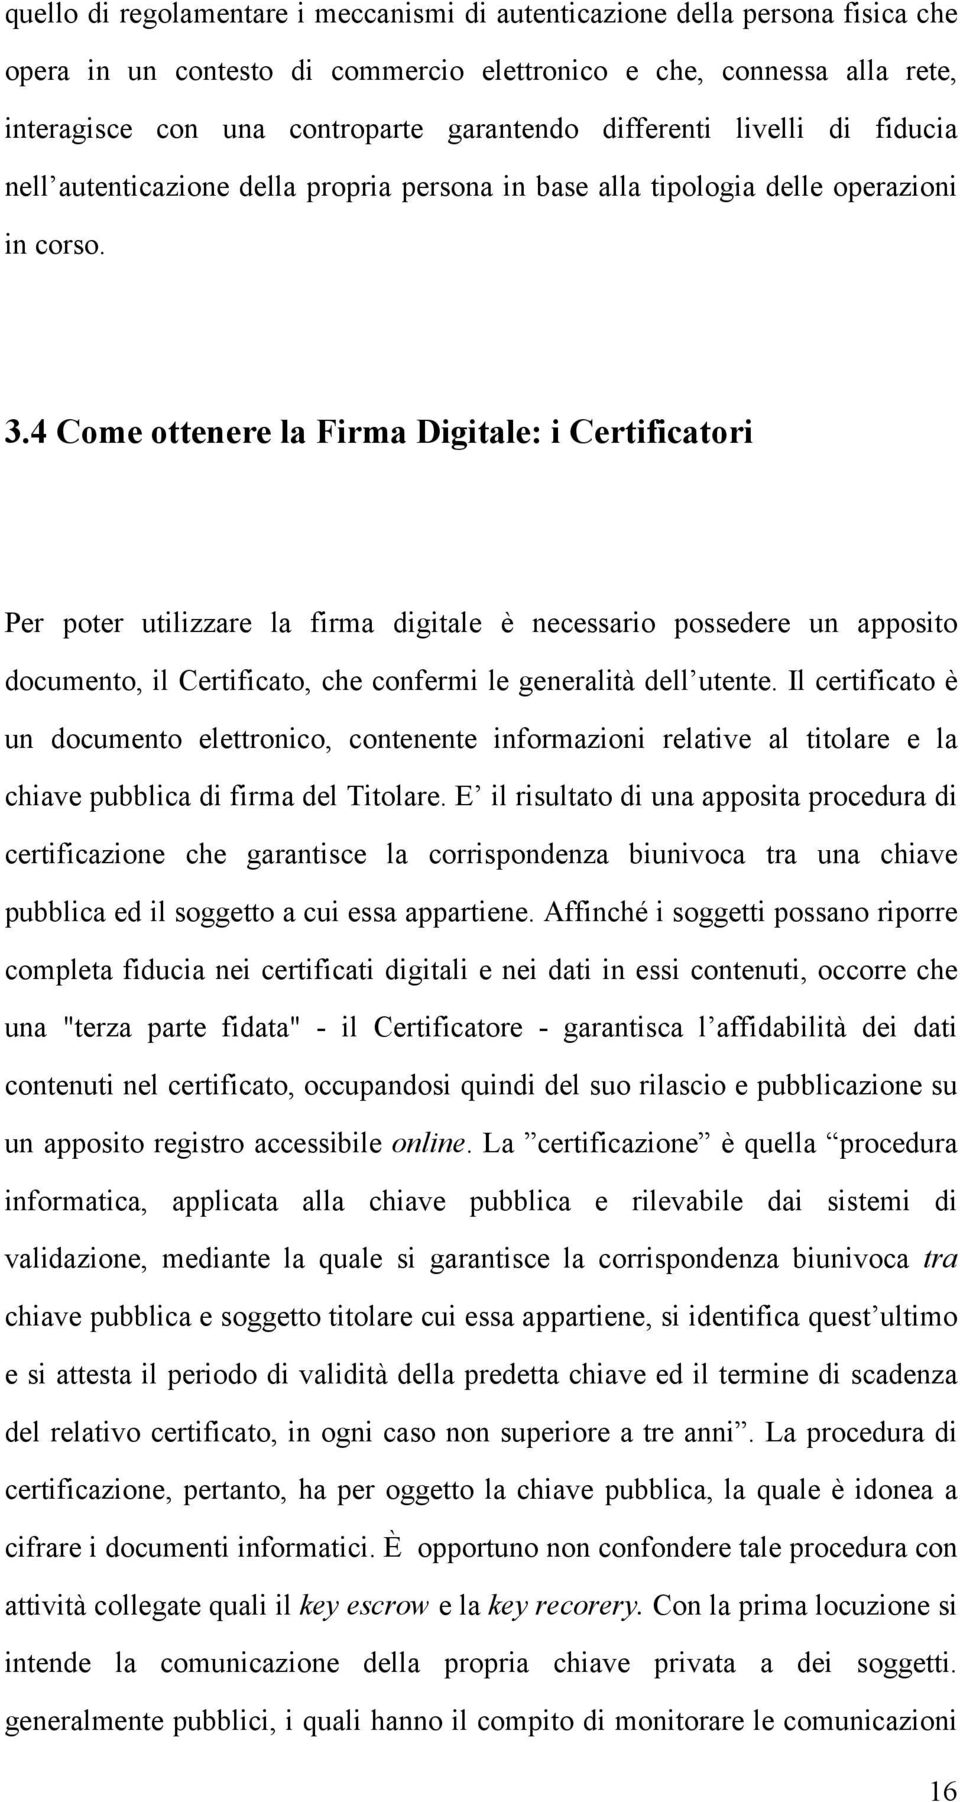 4 Come ottenere la Firma Digitale: i Certificatori Per poter utilizzare la firma digitale è necessario possedere un apposito documento, il Certificato, che confermi le generalità dell utente.